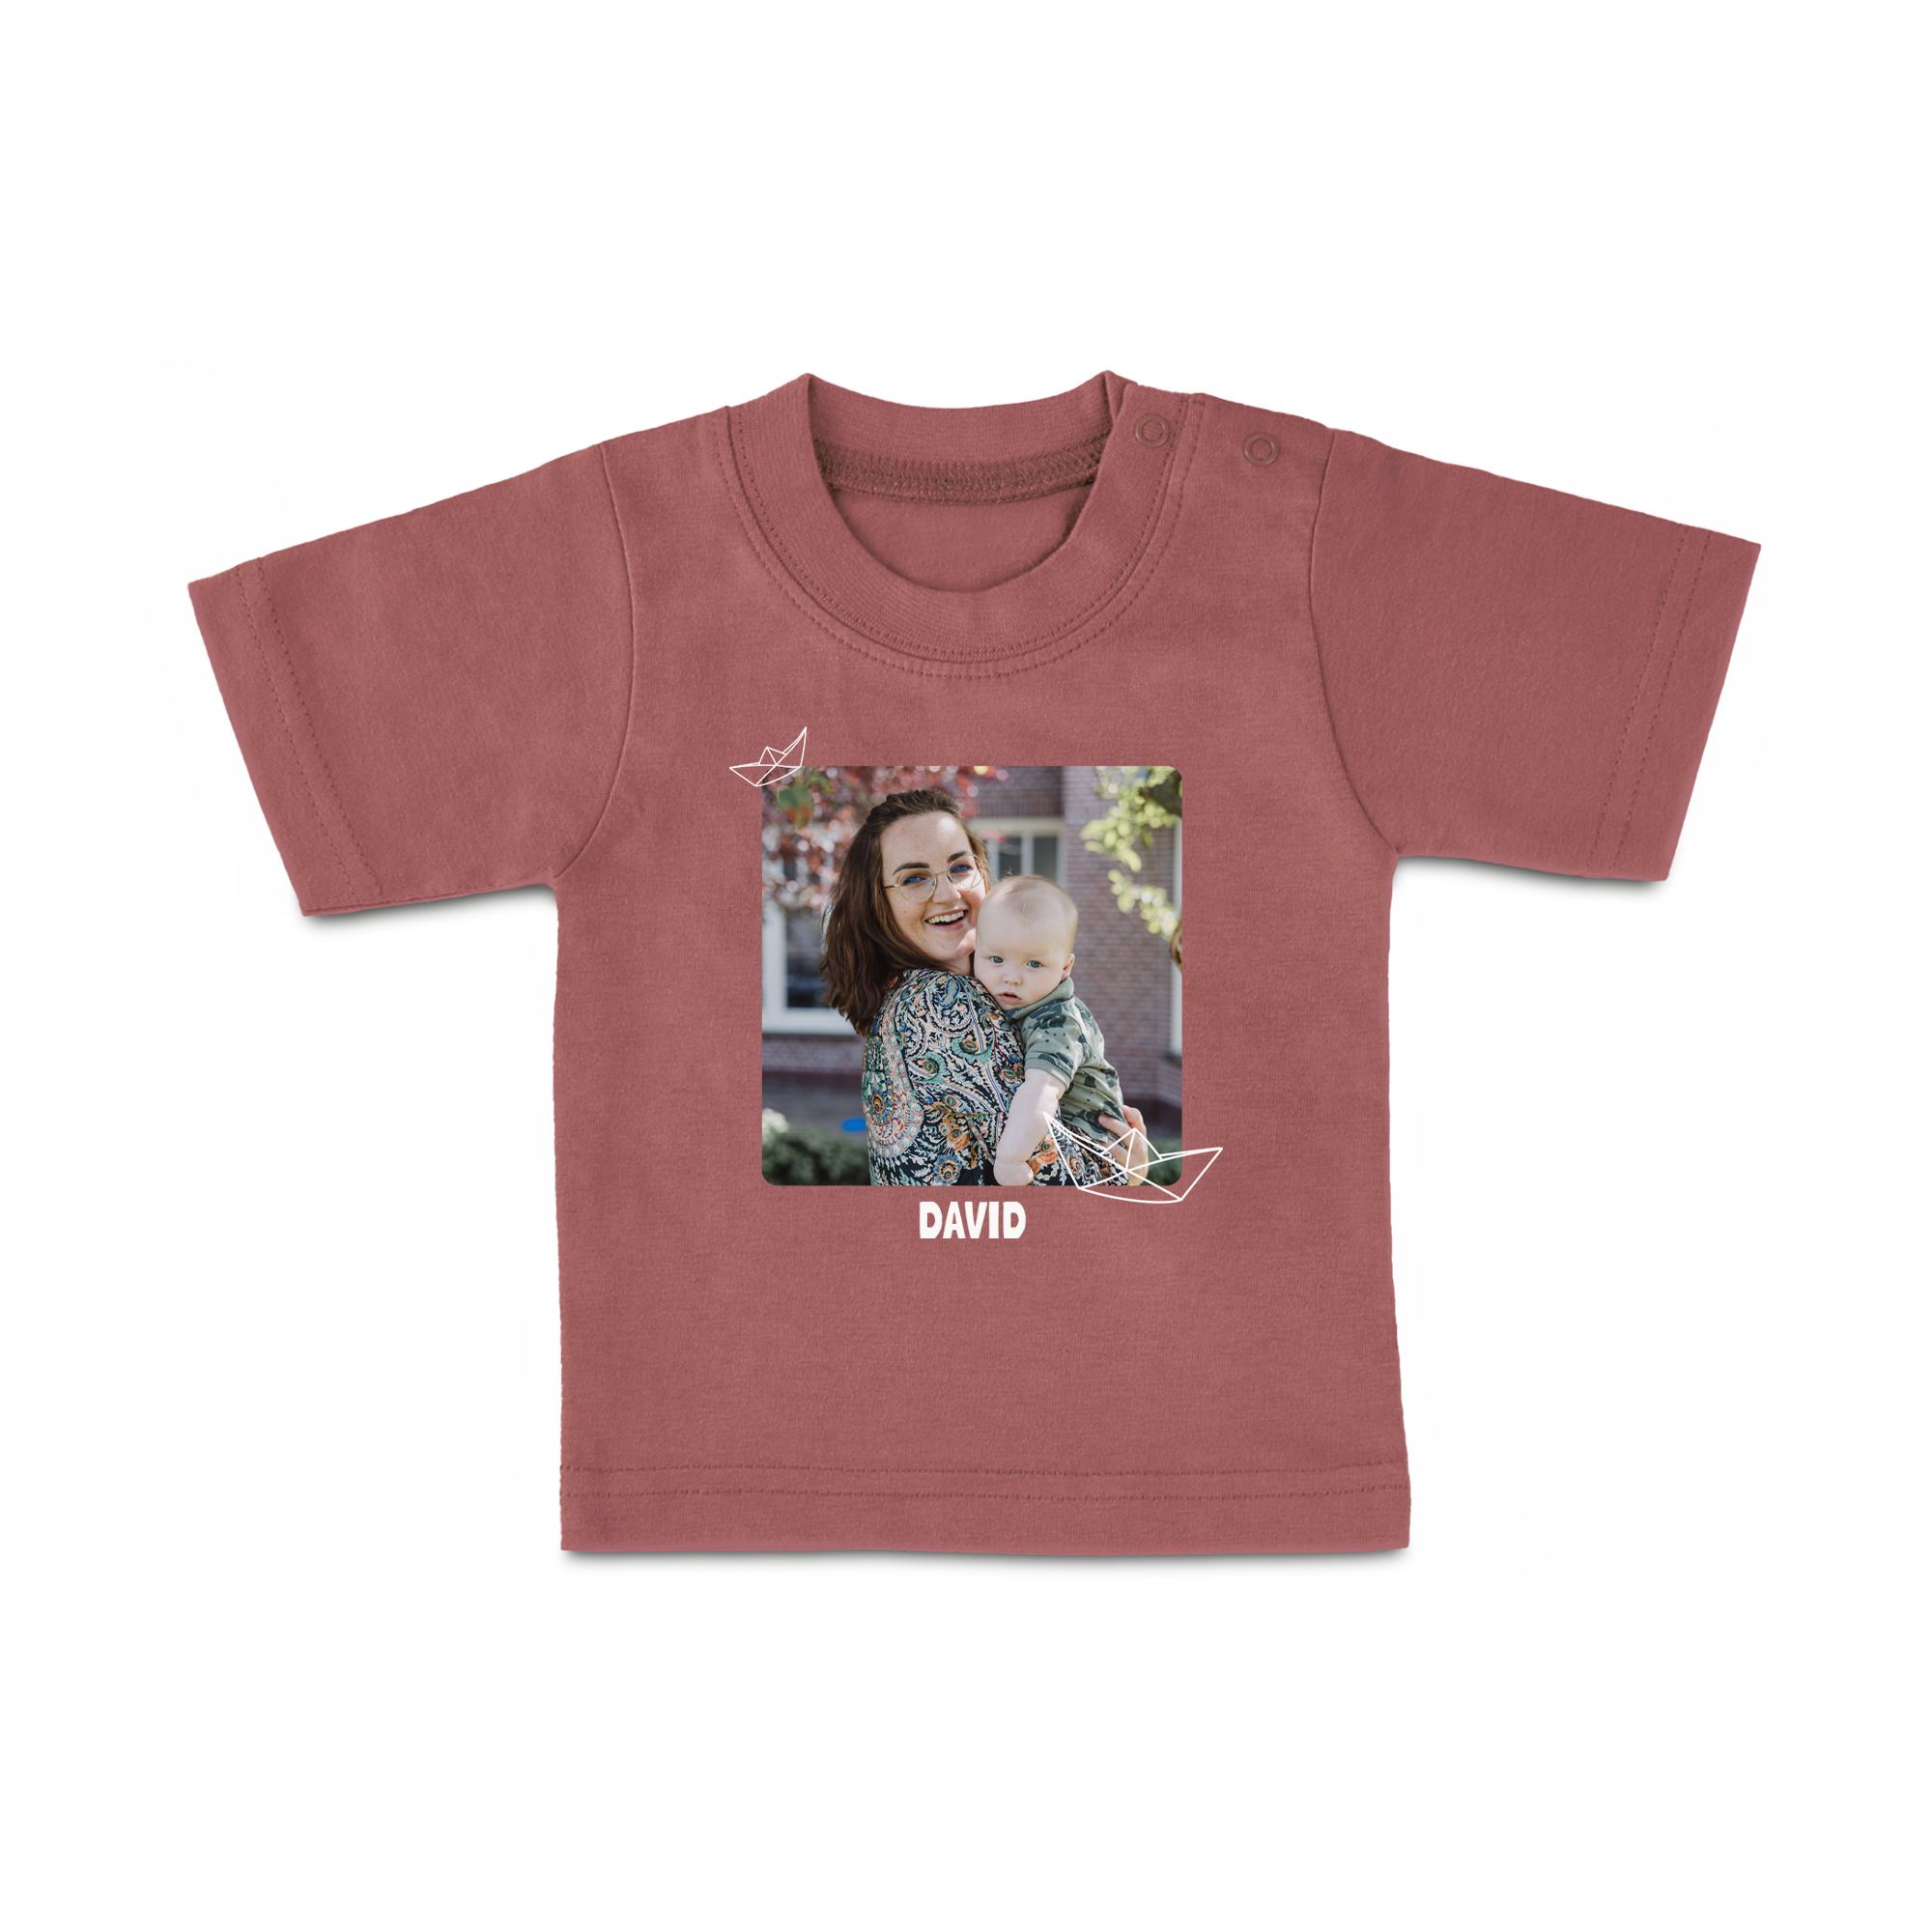 Baby T-Shirt - Printed - Short Sleeves - Pink  - 86/92